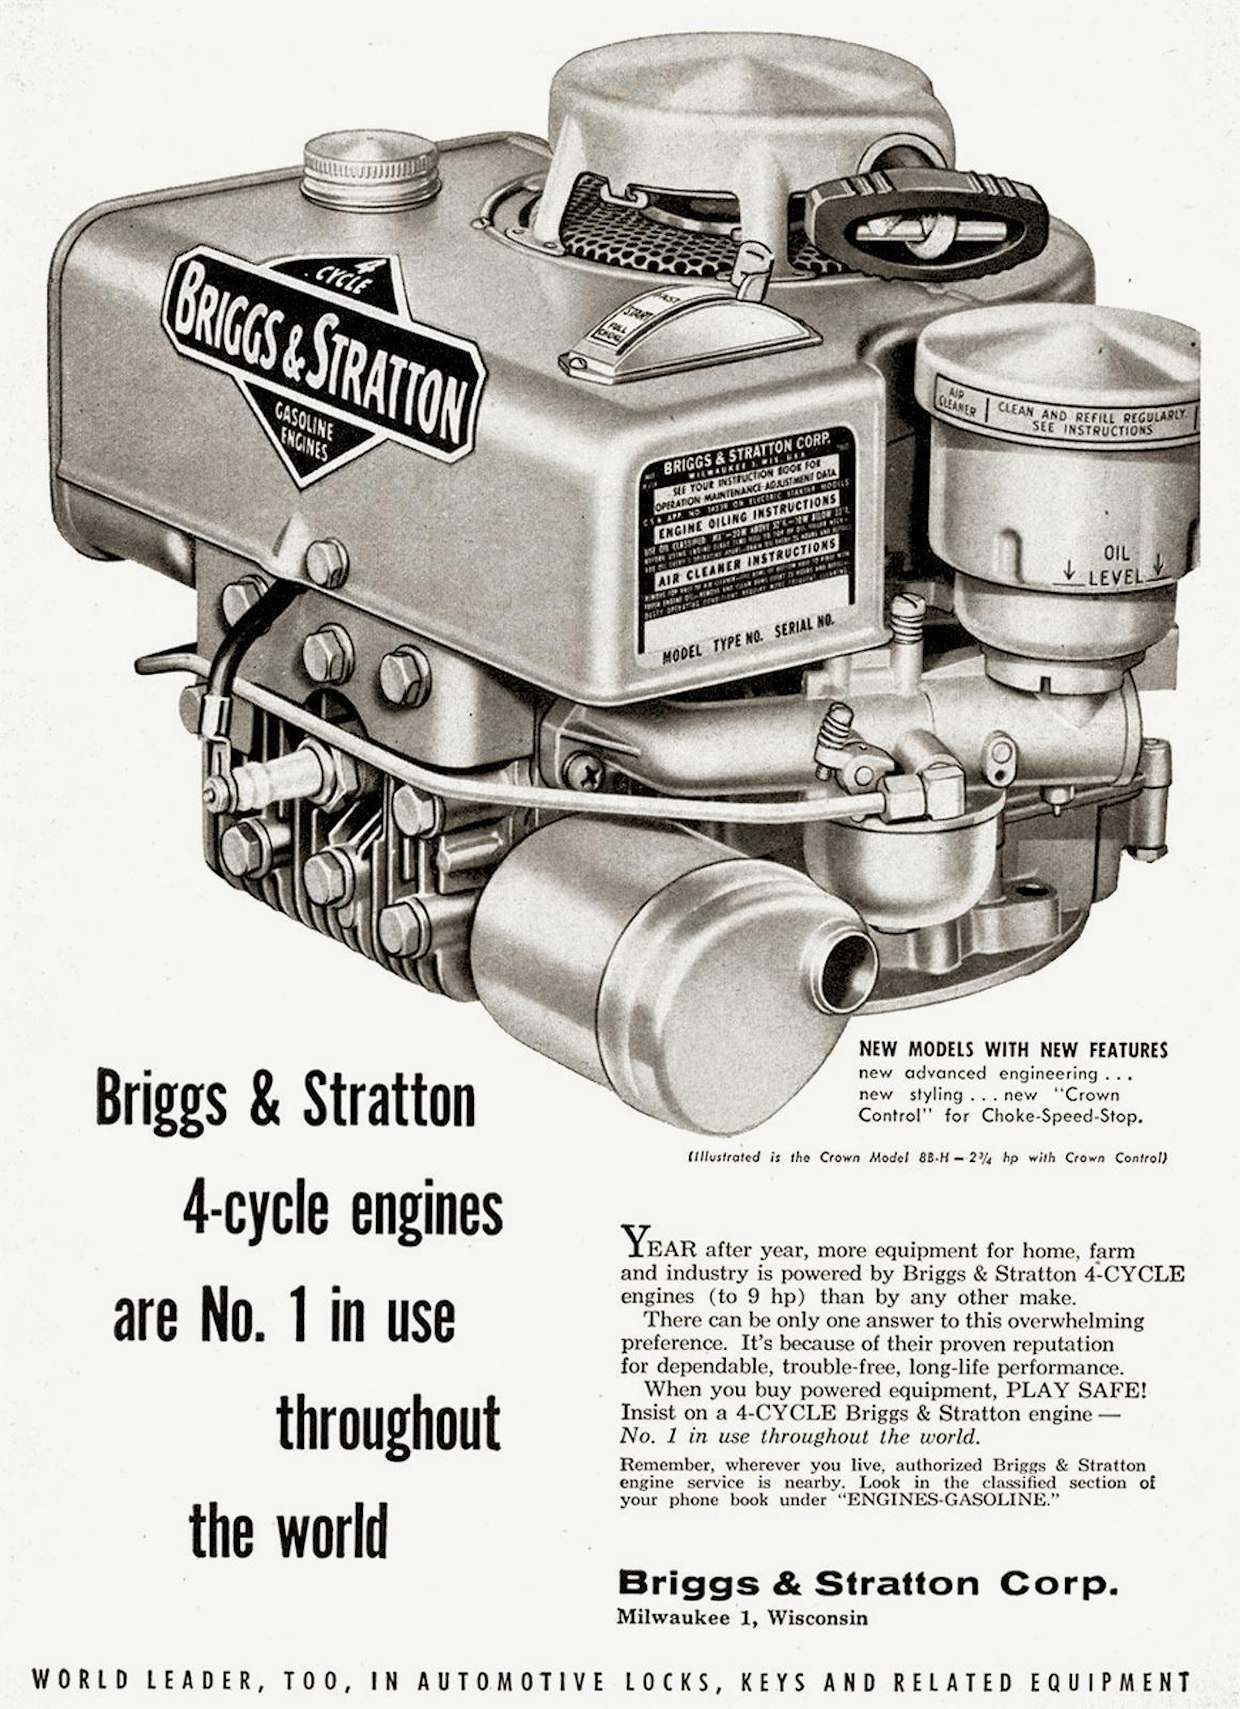 Ensimmäiset alumiinilohkoiset Briggs &amp; Stratton -moottorit tulivat tuotantoon 1953. Niiden tärkeimmät myyntivaltit olivat nelitahtisuus, edullinen hinta ja keveys. Tässä 50-luvulla julkaistussa mainoksessa näkyvää 8BH-mallia tehtiin vuoteen 1958 asti. Kuten mainoksen alareunan tekstistä käy ilmi, valmisti Briggs &amp; Stratton myös autojen lukkoja. Ne olivat oleellinen osa liiketoimintaa aina 70-luvulle saakka.